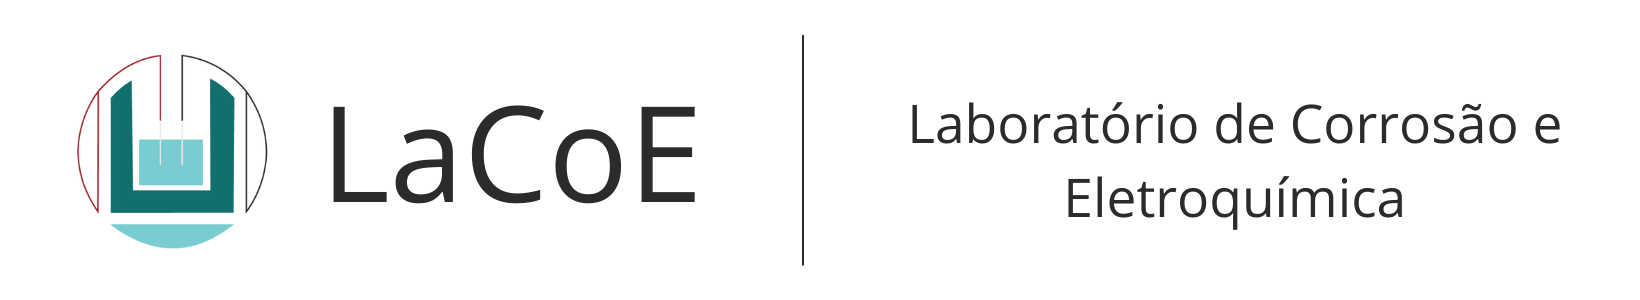 Laboratório de Corrosão e Eletroquímica (LaCoE)